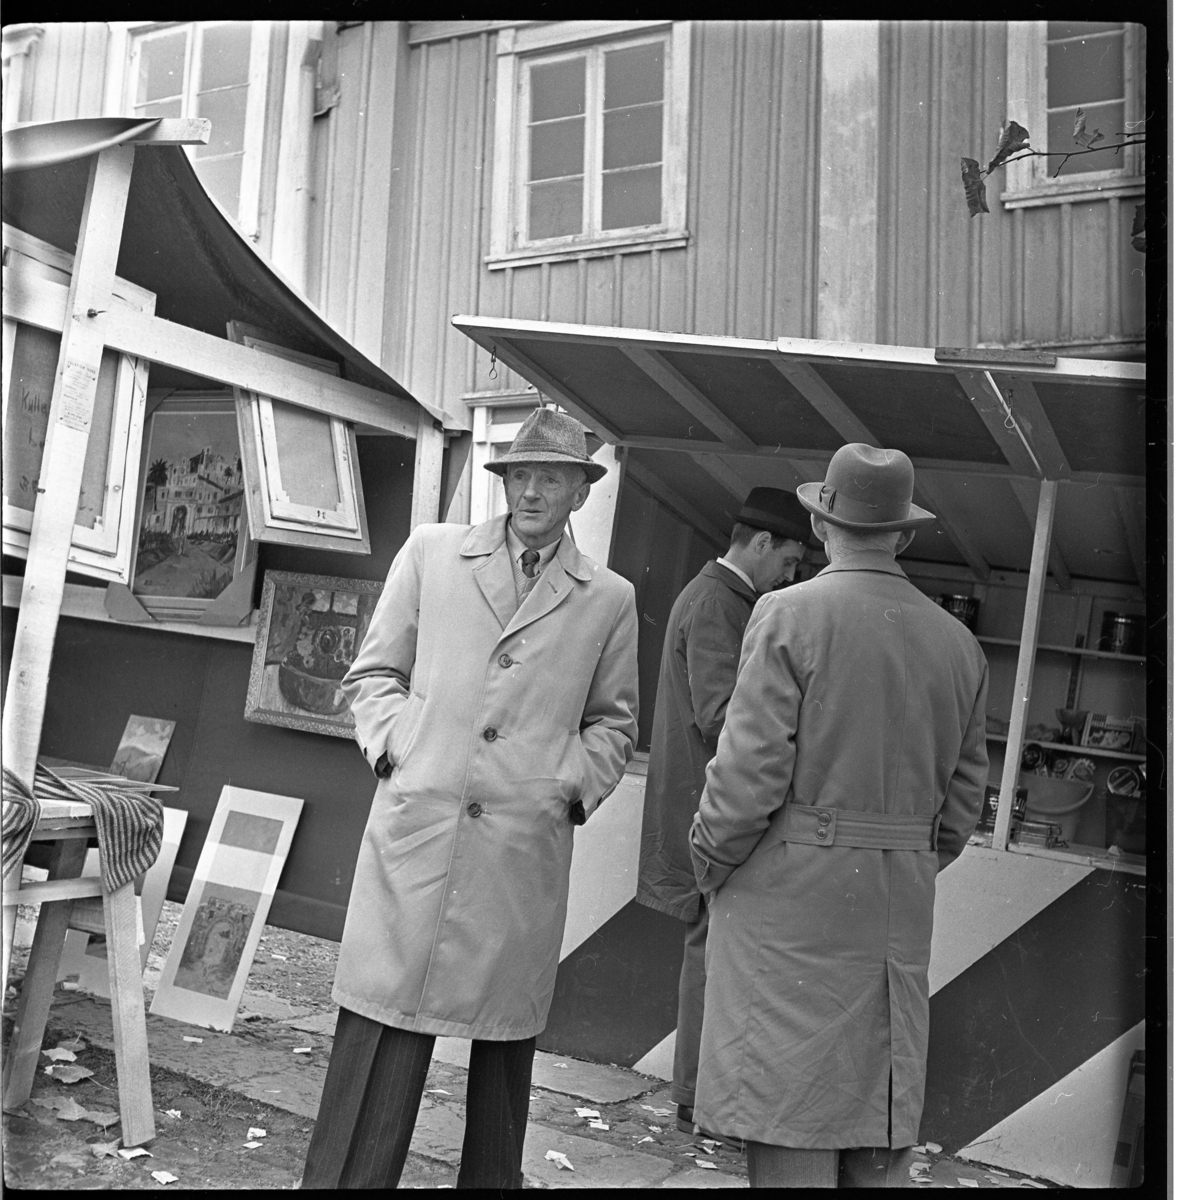 Troligen marknad, eventuellt i Gränna. På bilden syns Farman Carlsson eller Gustav Gustavsson från Joenstorp.